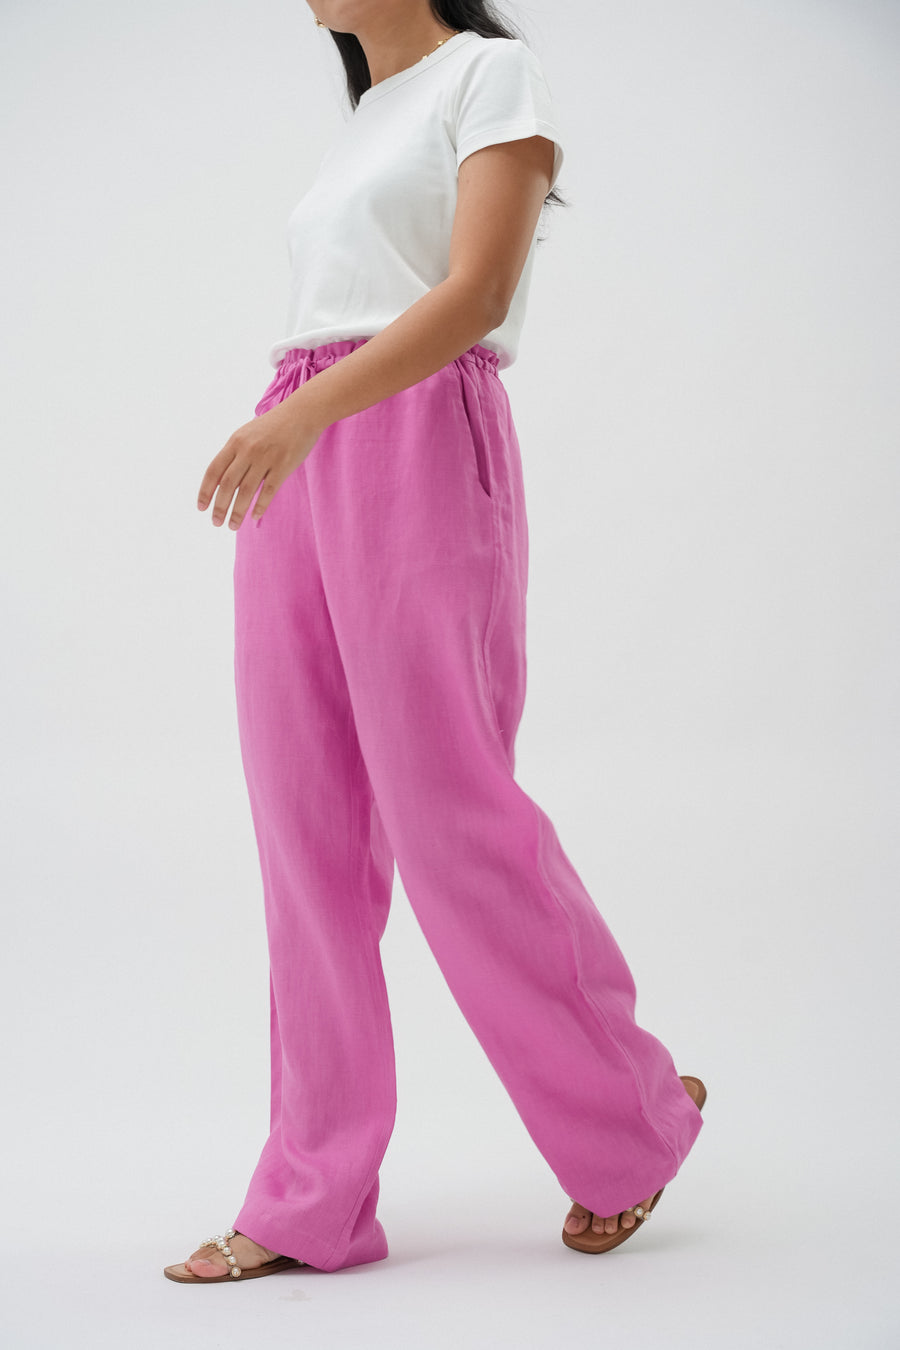 Brunch Linen Pants in Pink